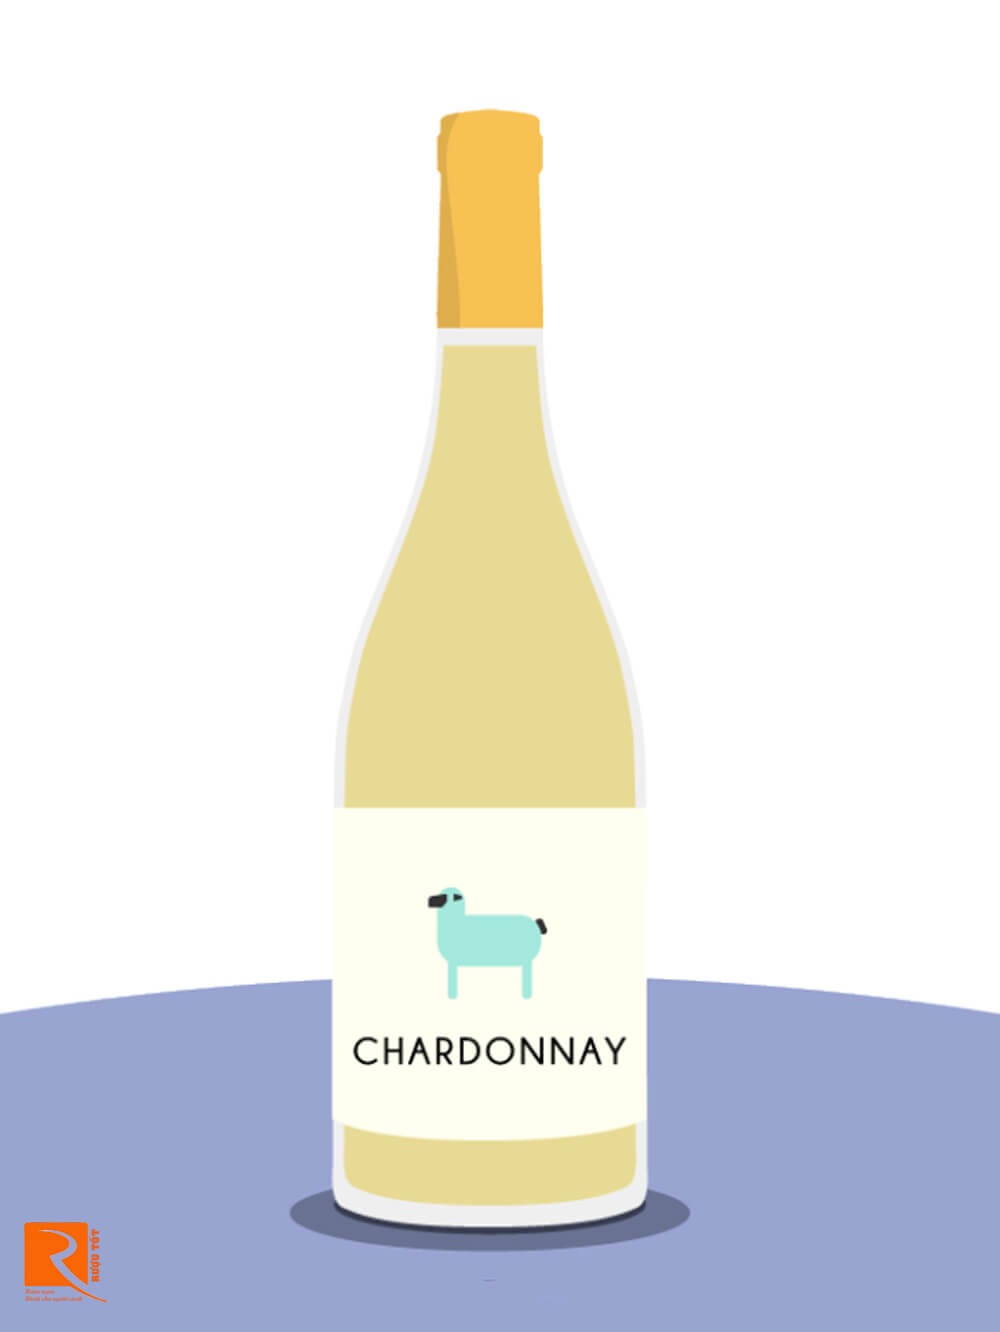  Chardonnay